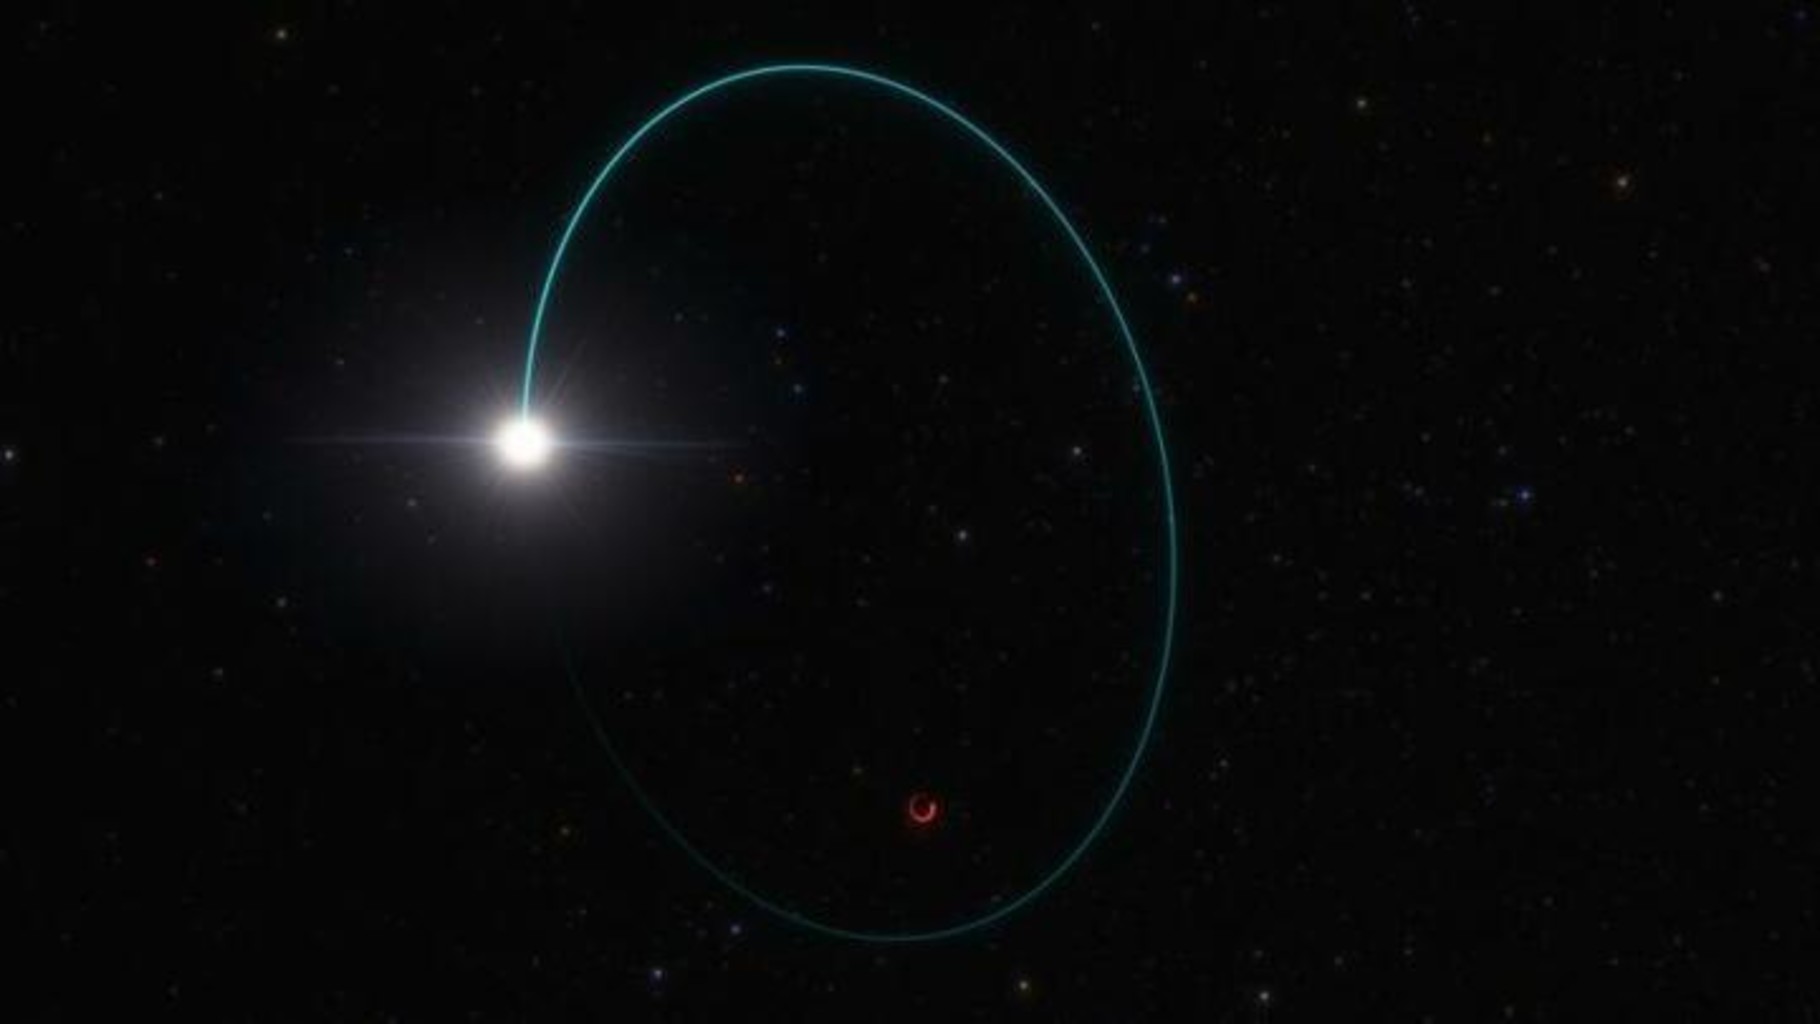 Увидеть черную дыру невозможно по определению, но ее местоположение выдала звезда-компаньон, орбиту которой искажает чудовищная гравитация. Фото: ESO/L. Calçada